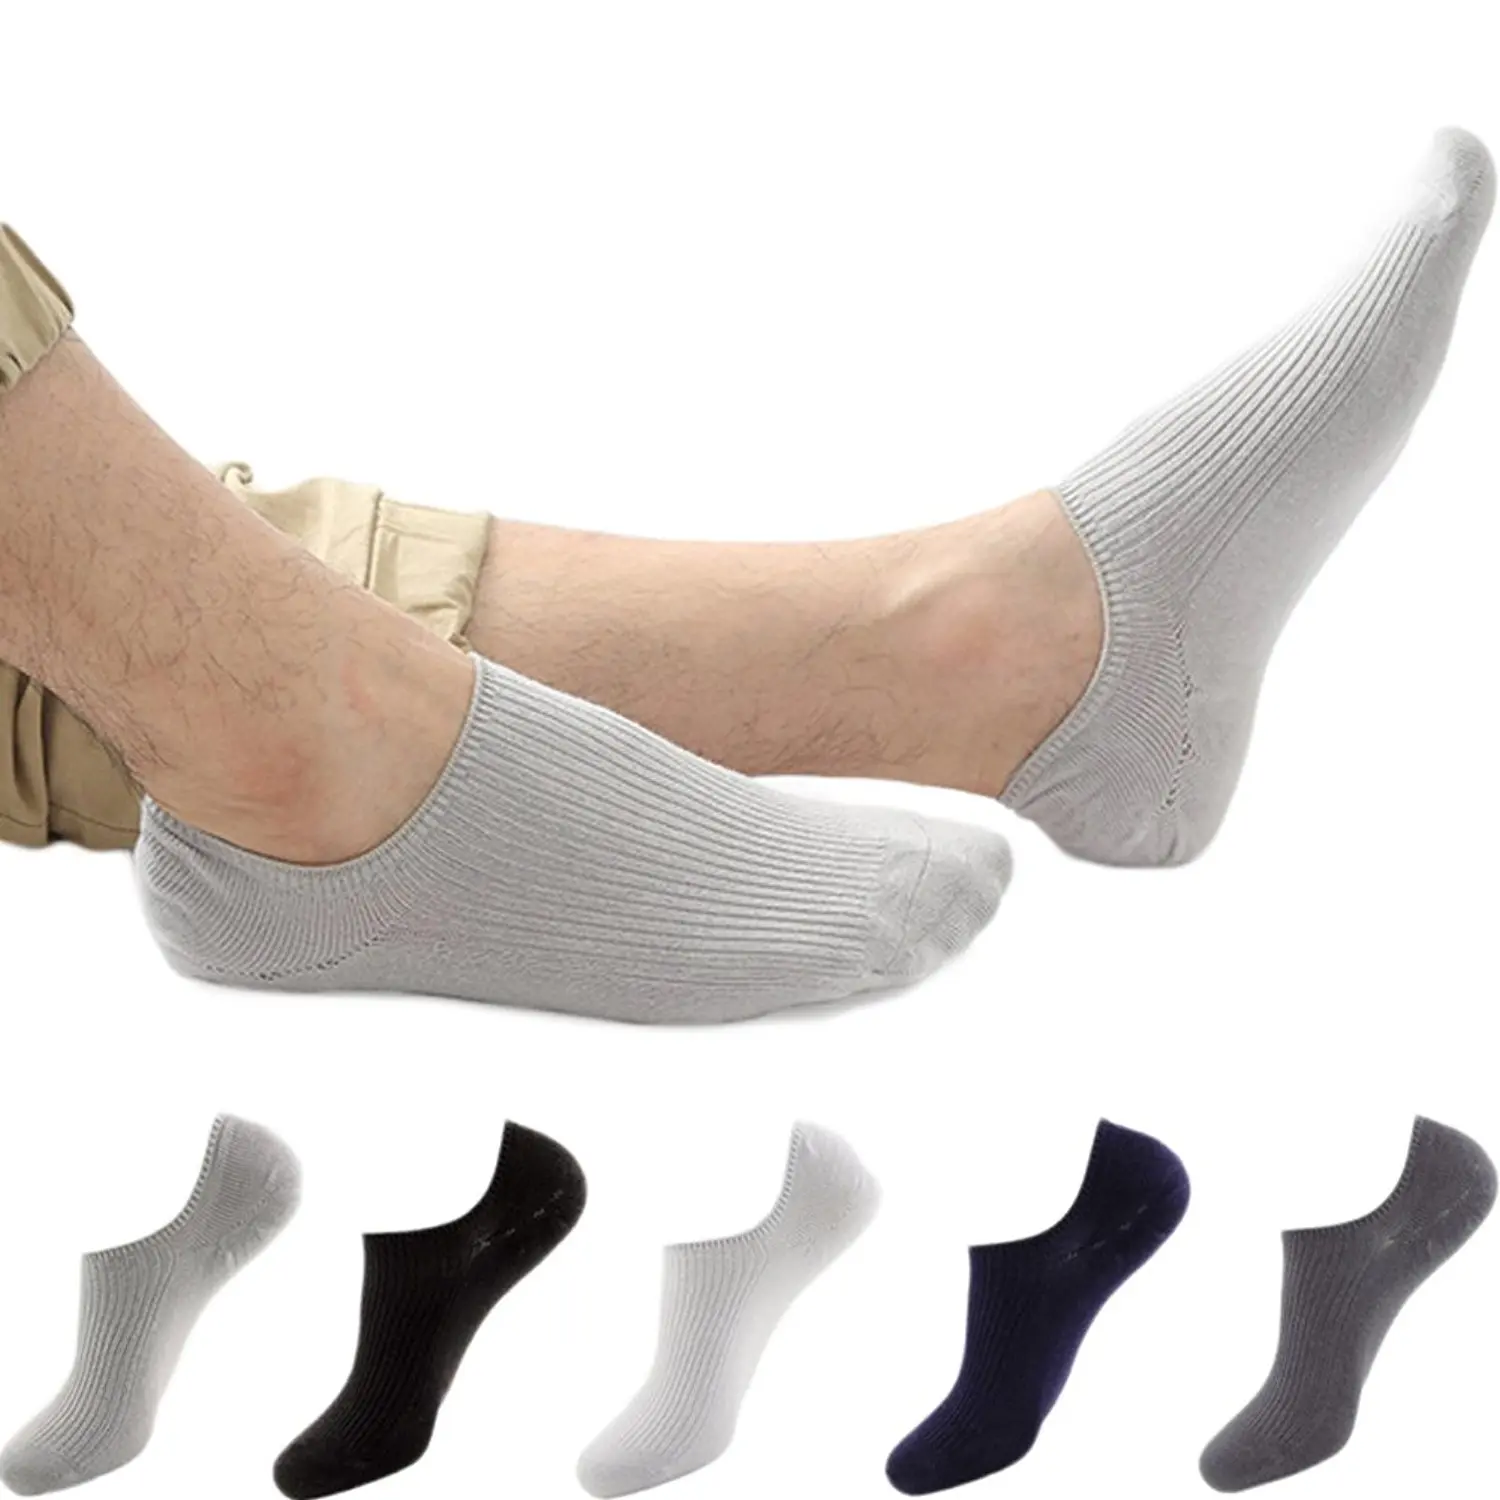 deals on mens socks